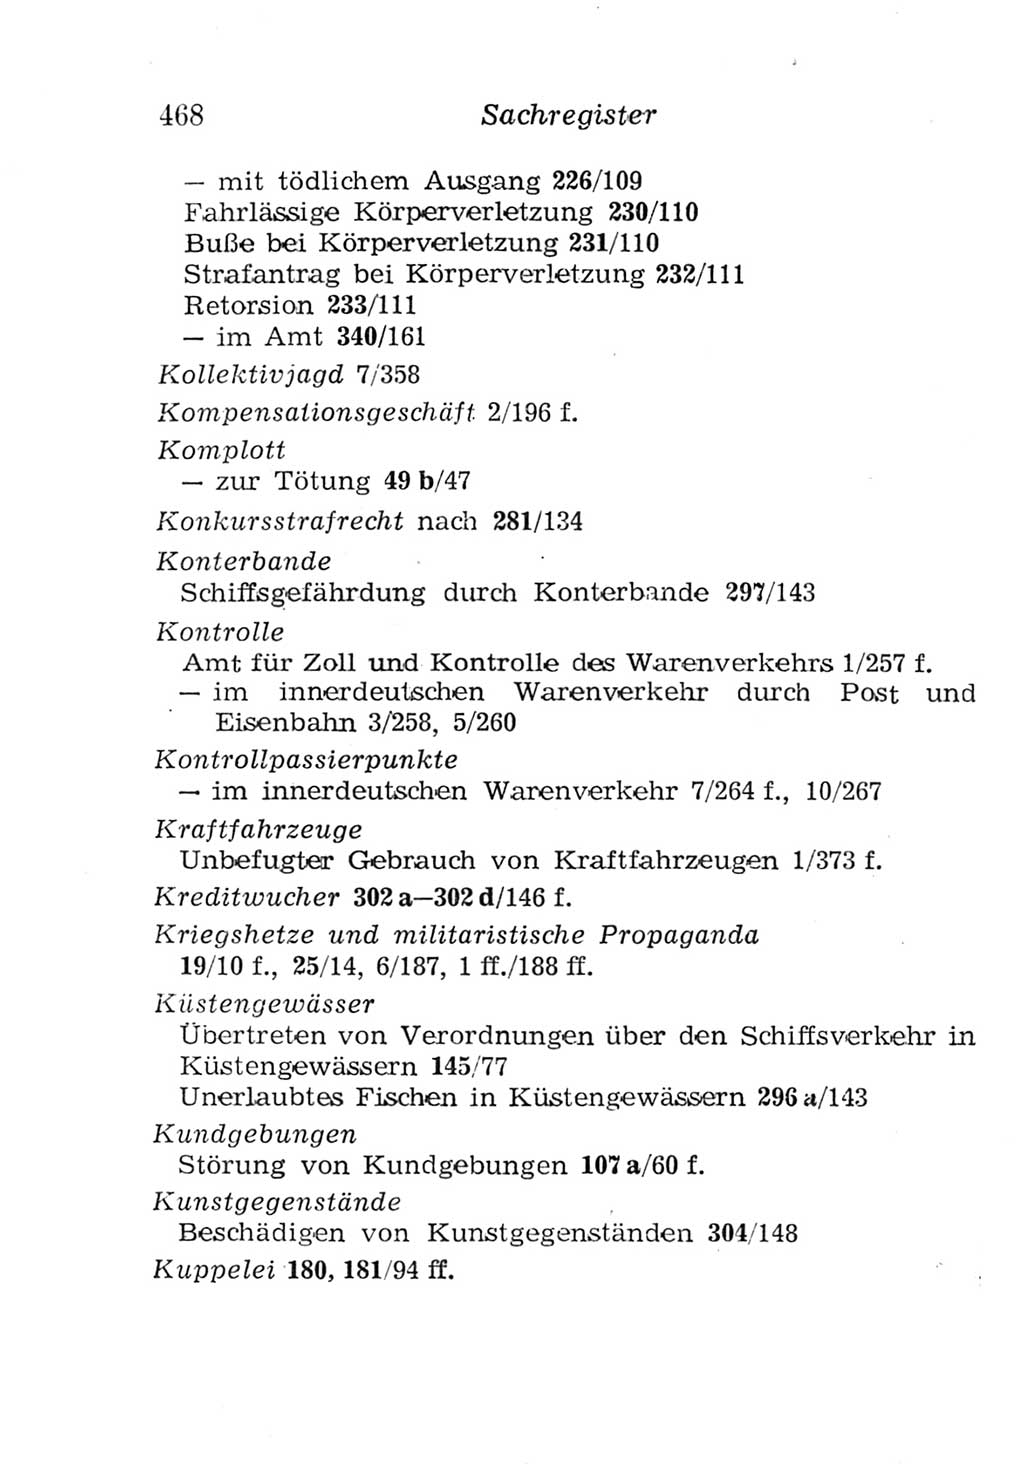 Strafgesetzbuch (StGB) und andere Strafgesetze [Deutsche Demokratische Republik (DDR)] 1957, Seite 468 (StGB Strafges. DDR 1957, S. 468)